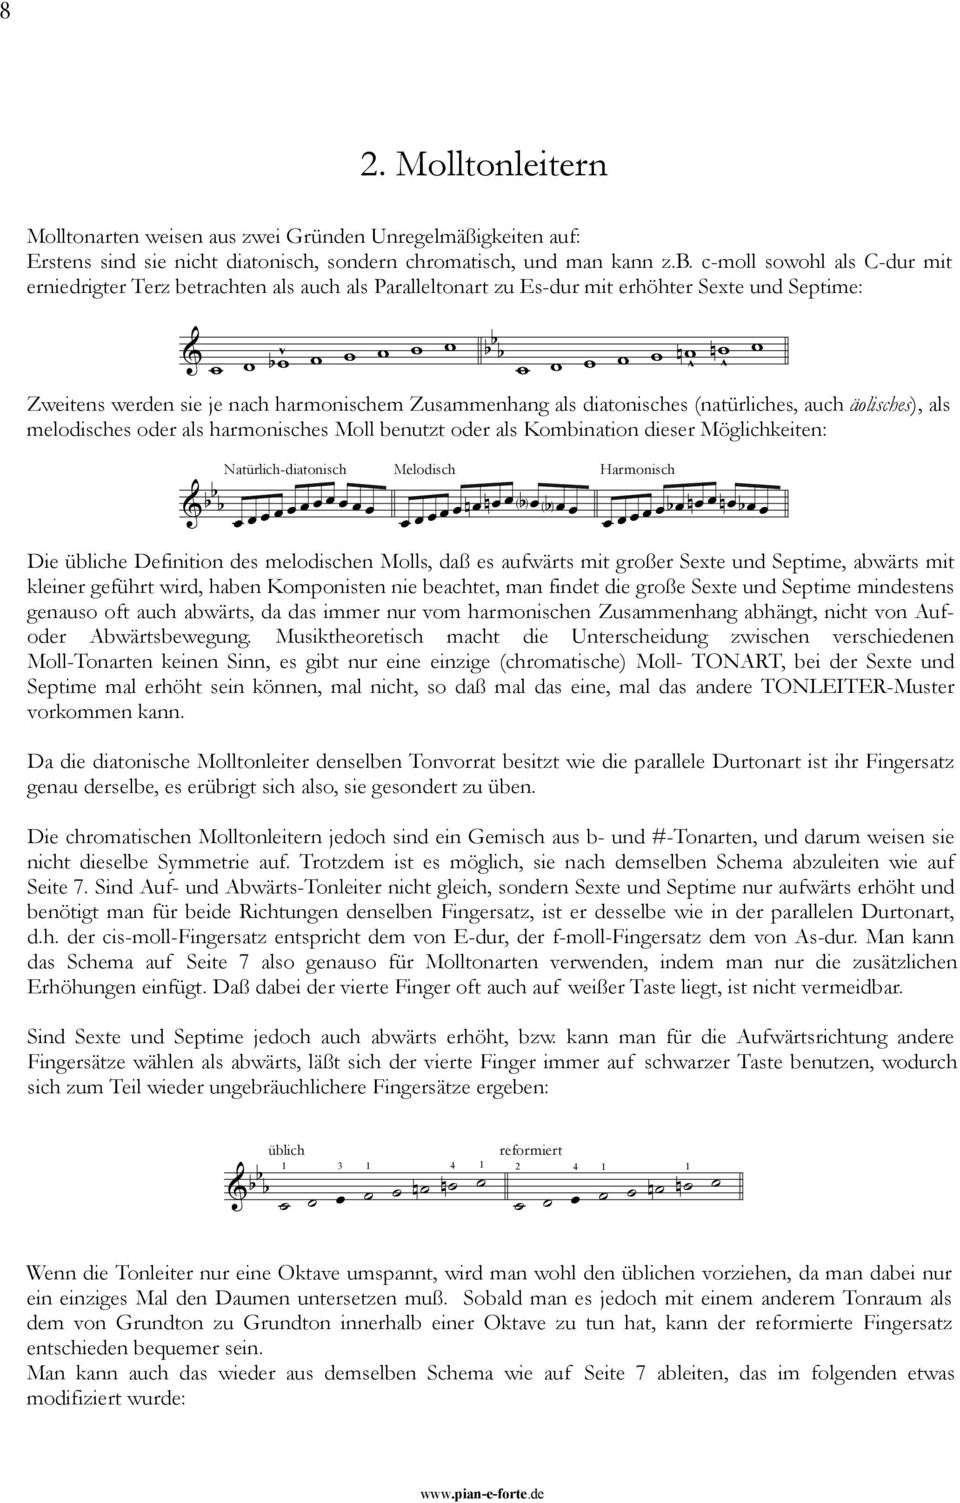 harmonischem Zusammenhang als diatonisches (natürliches, auch äolisches), als melodisches oder als harmonisches Moll benutzt oder als Kombination dieser Möglichkeiten: Natürlich-diatonisch Melodisch